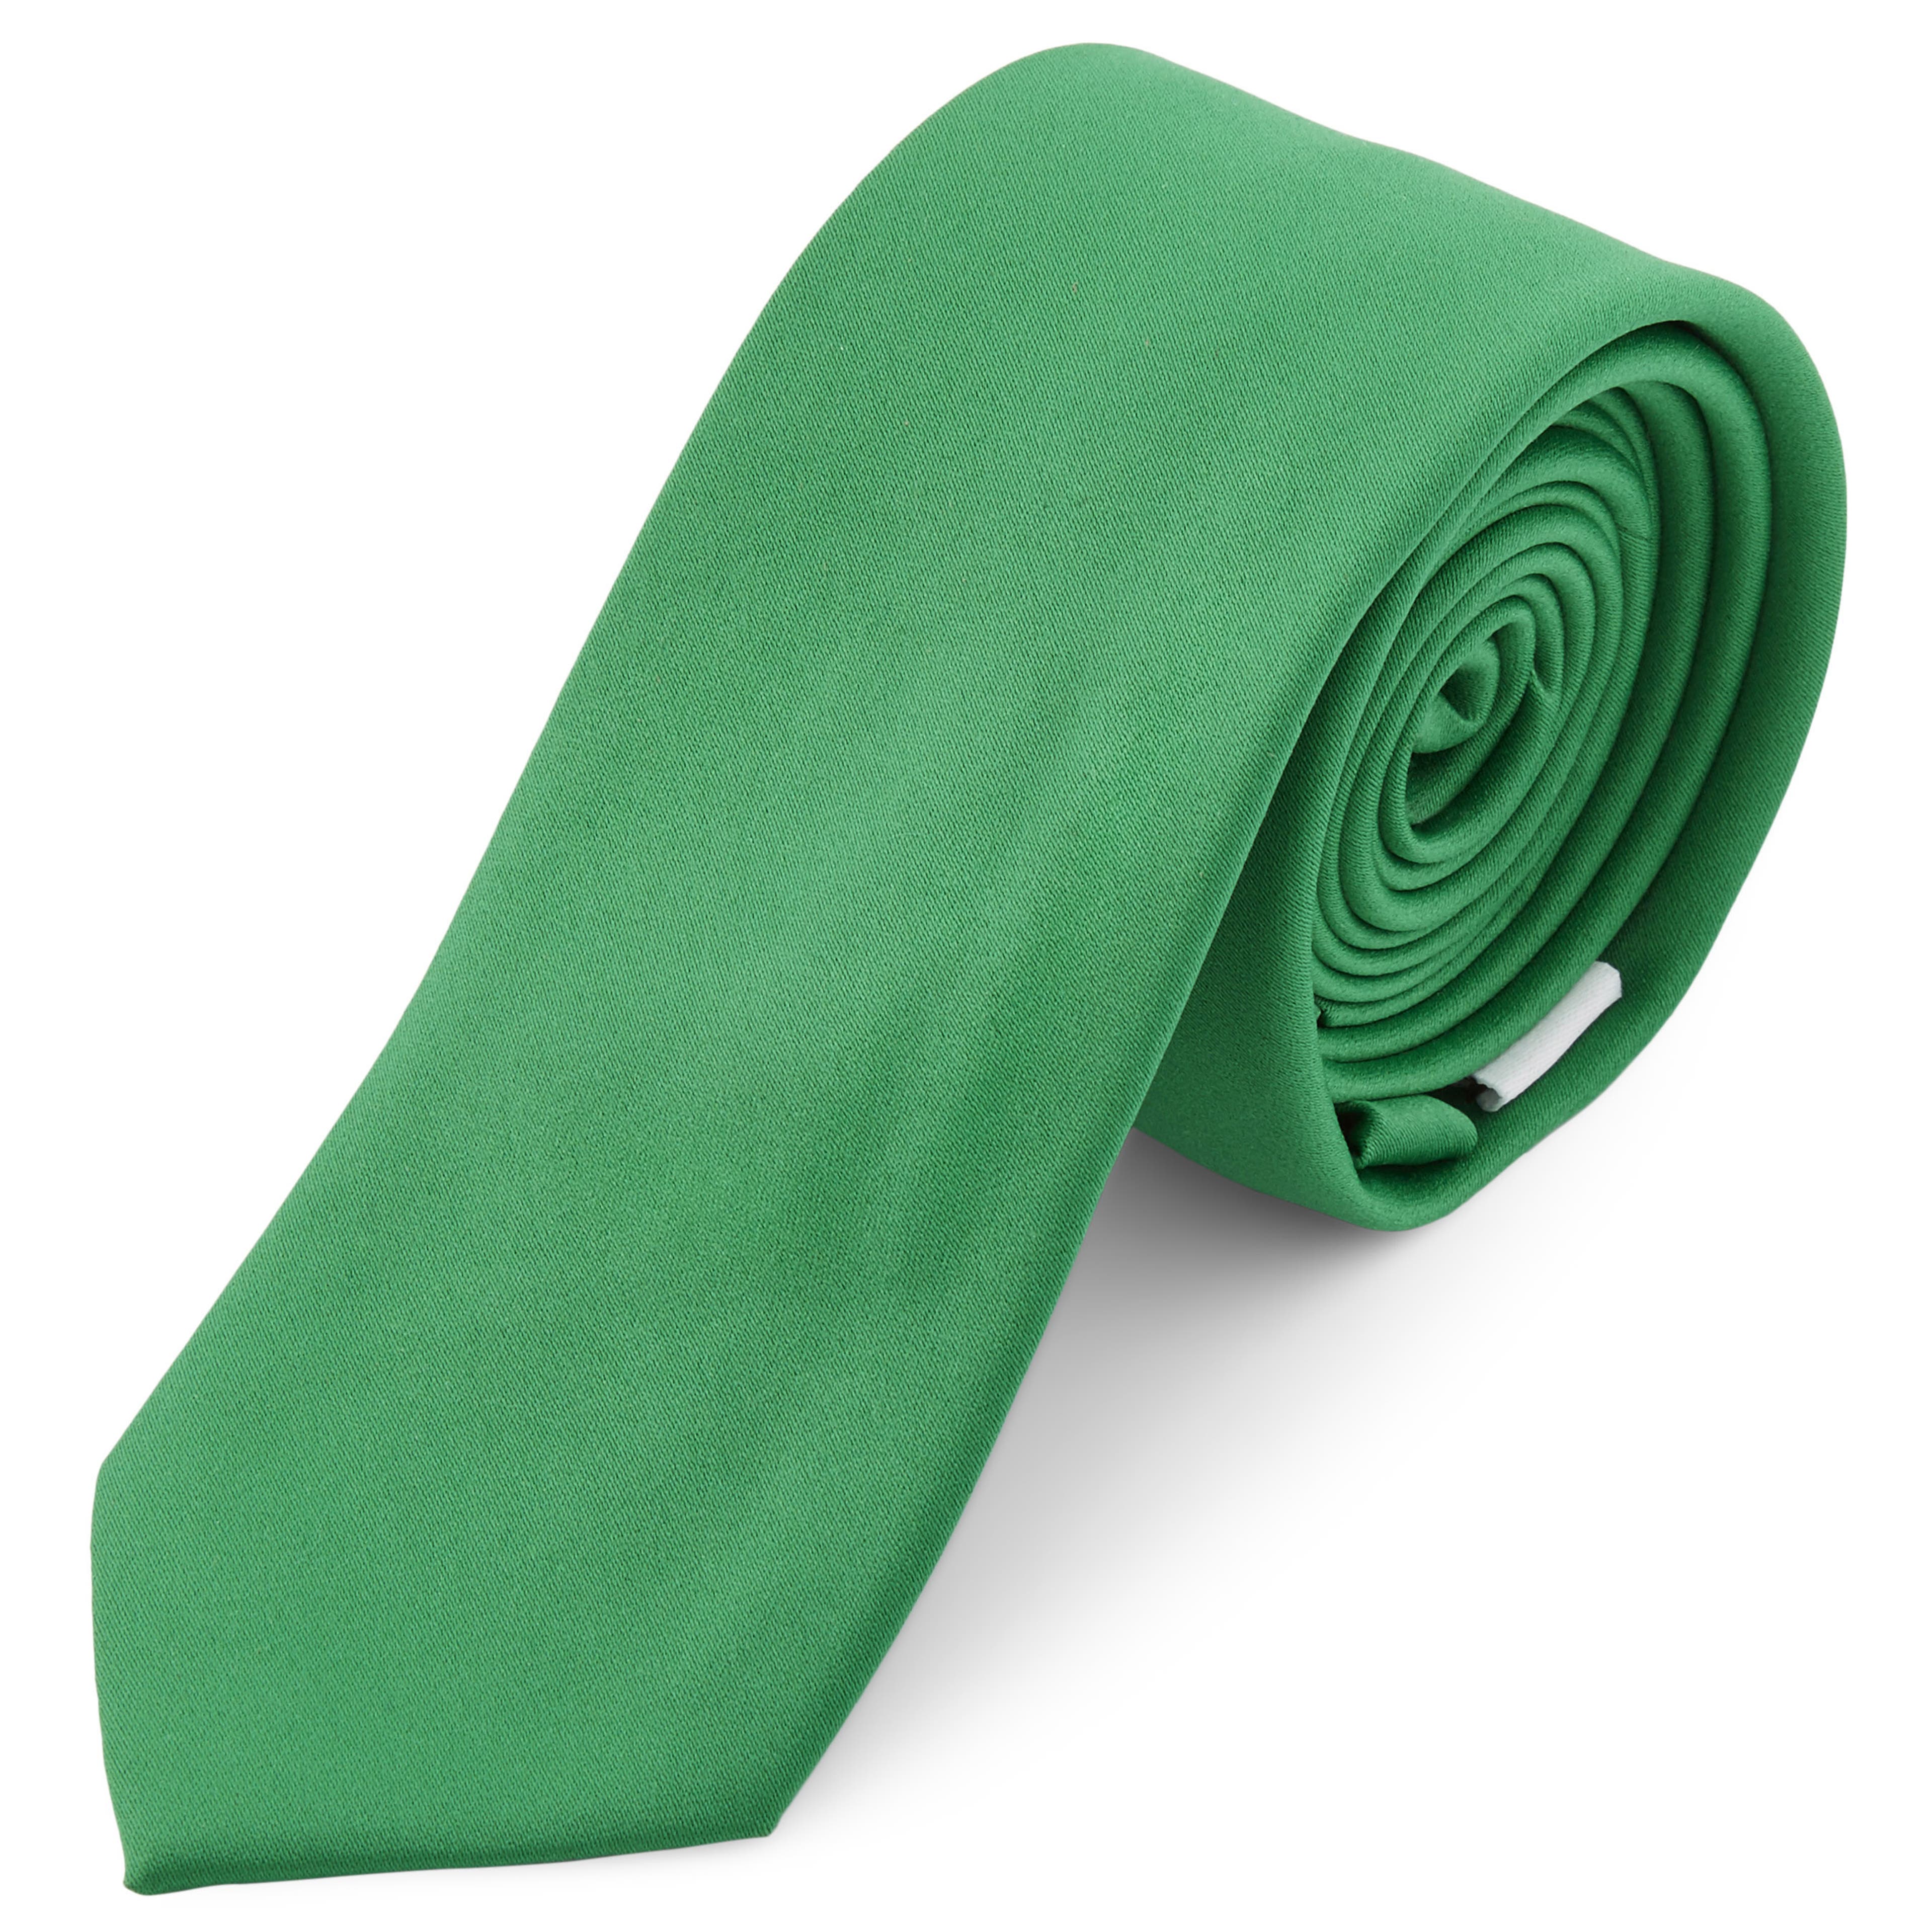 Corbata básica verde esmeralda 6 cm